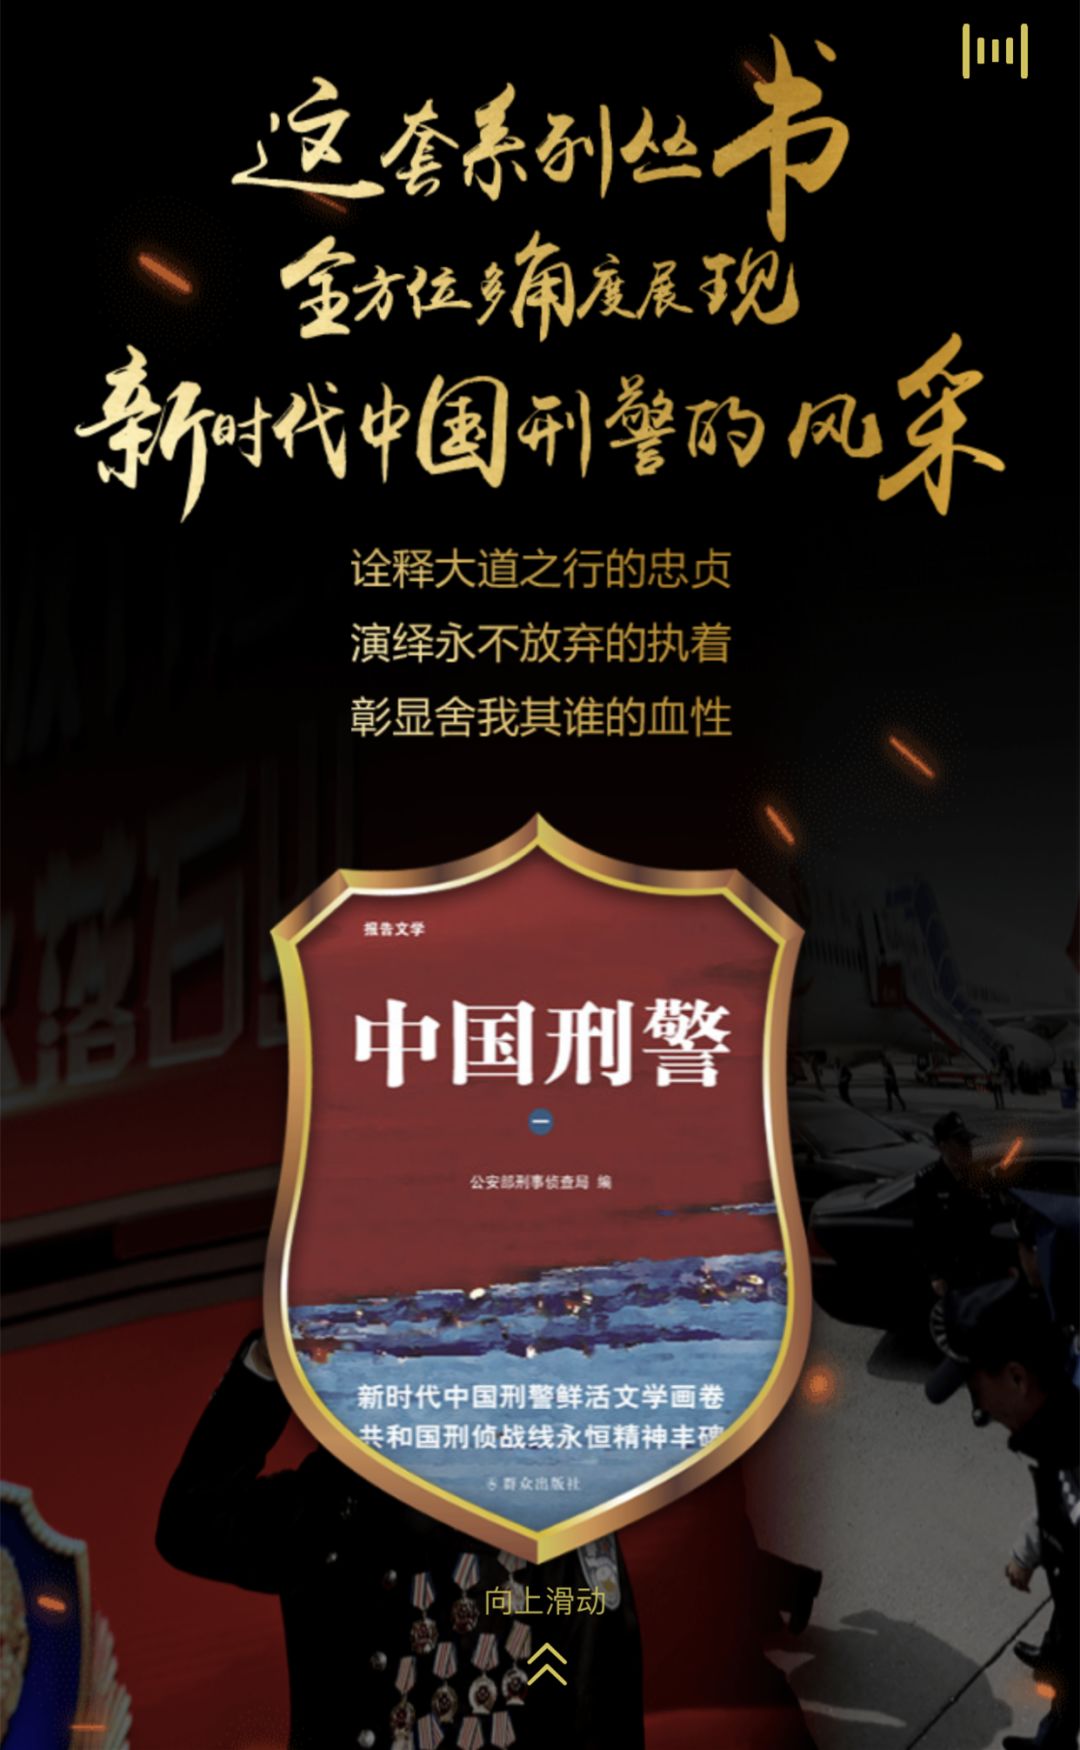 《中国刑警(一)》报告文学丛书今日首发